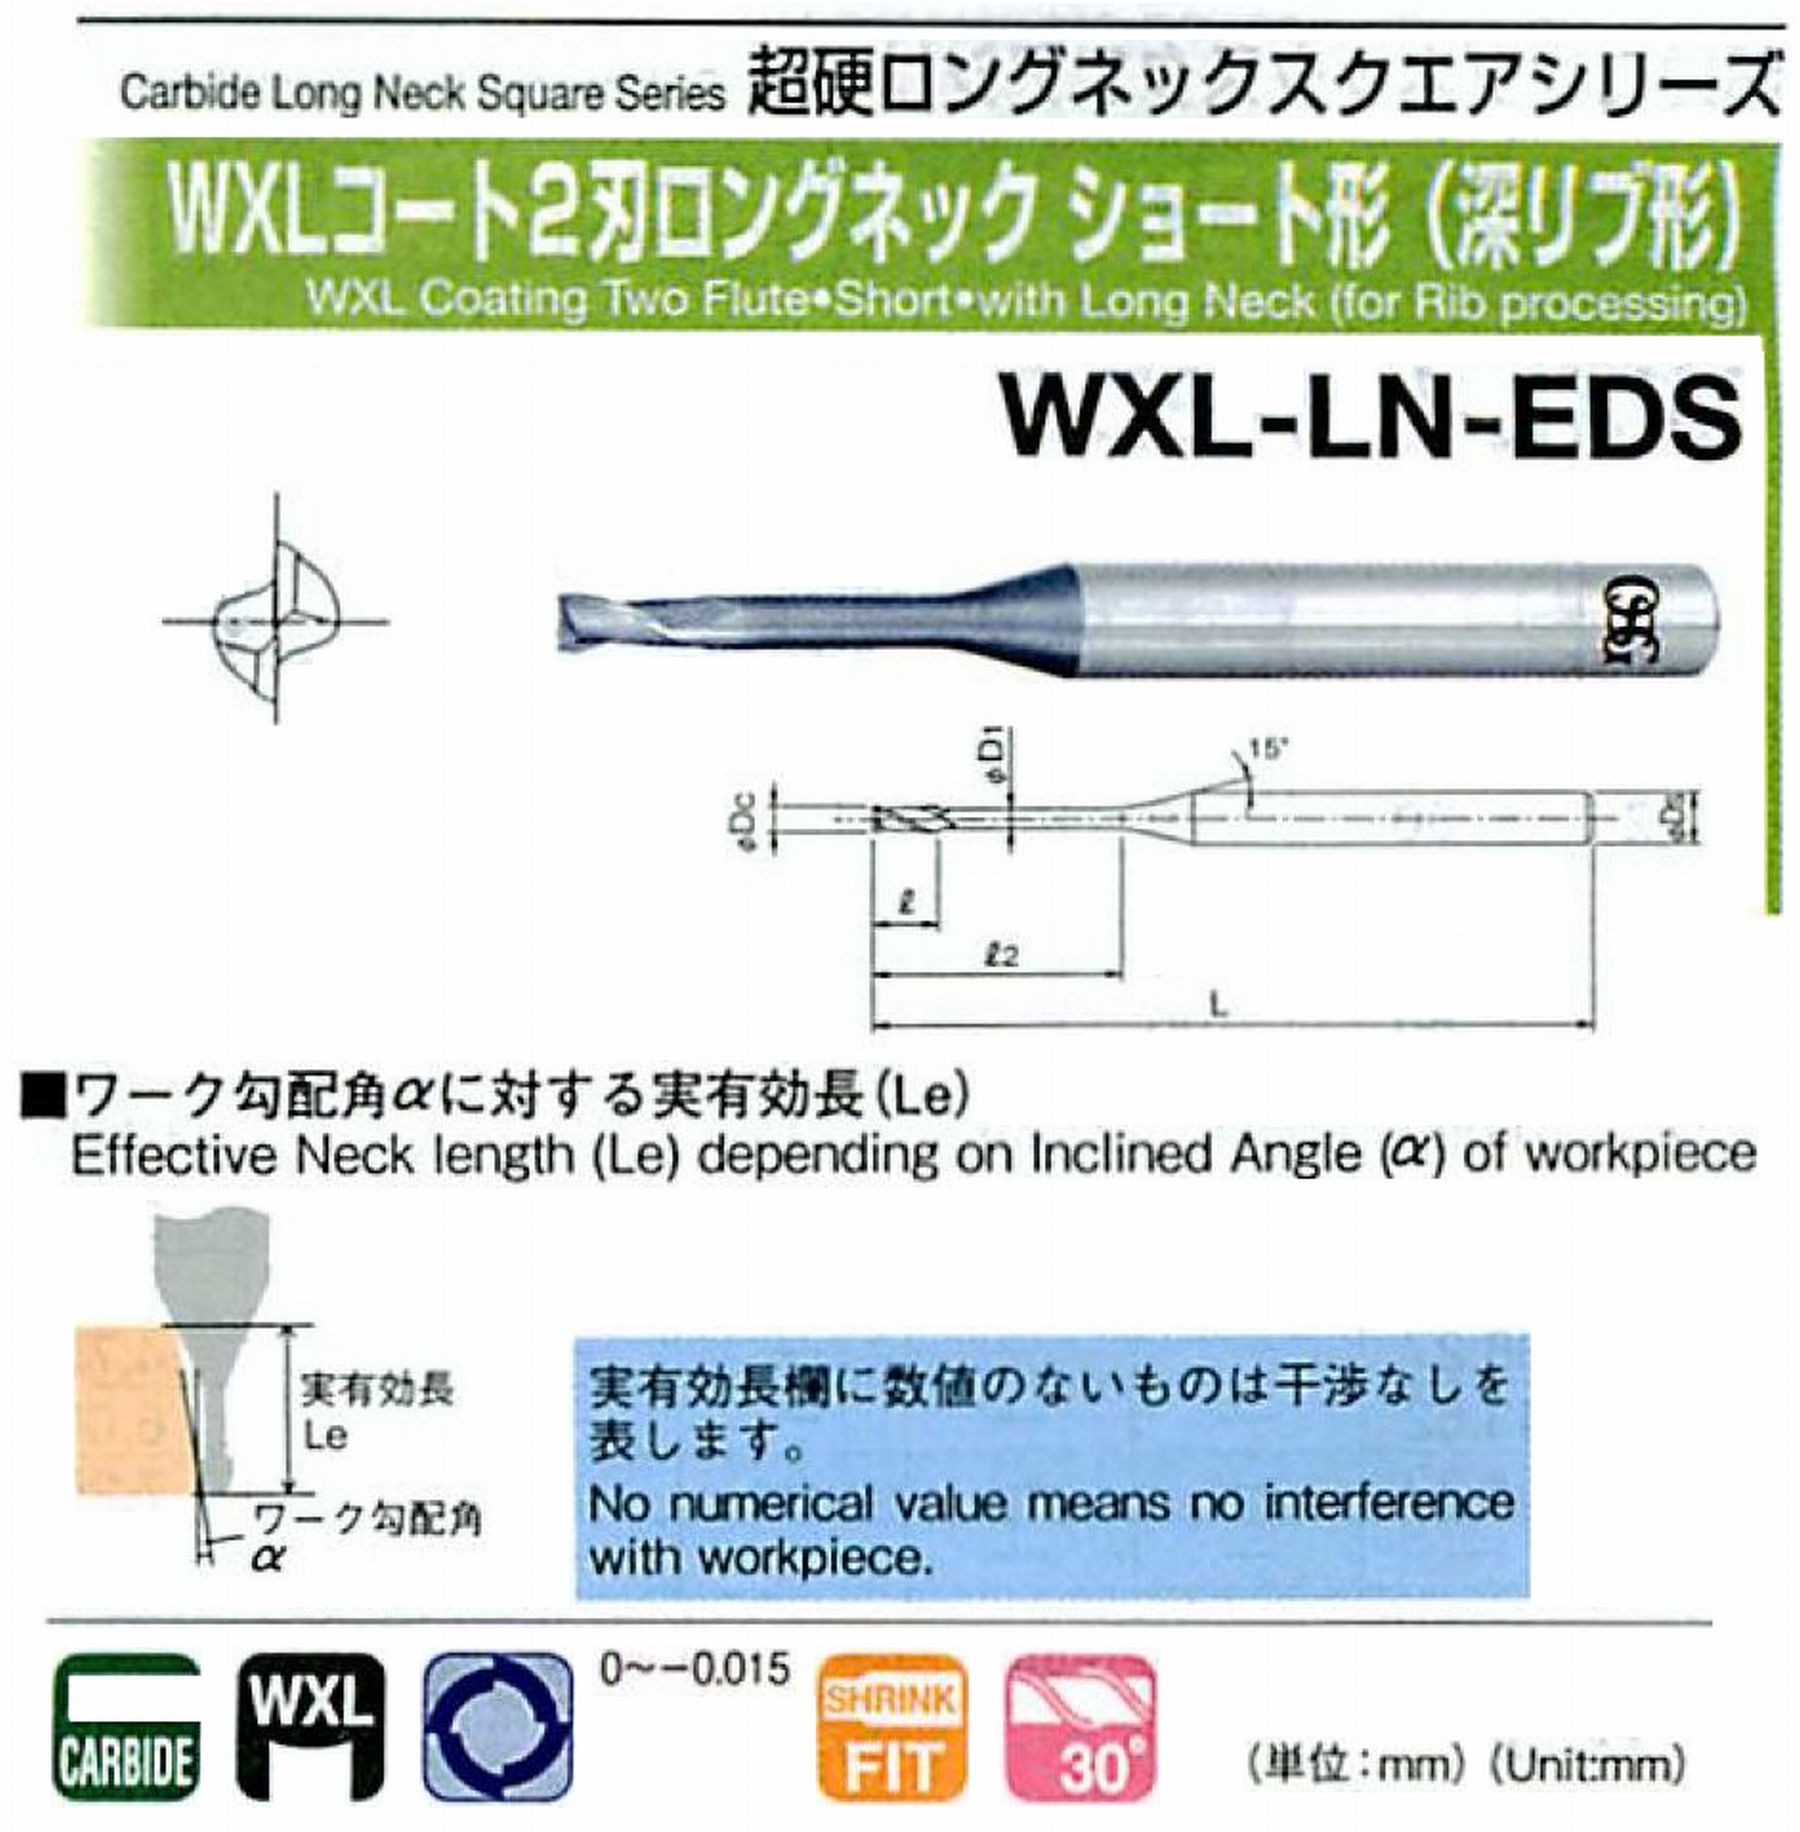 オーエスジー/OSG WXLコート2刃 ロングネックショート形(深リブ形) WXL-LN-EDS 外径×首下長1×16 全長50 刃長1.5 シャンク径4mm 首径0.95